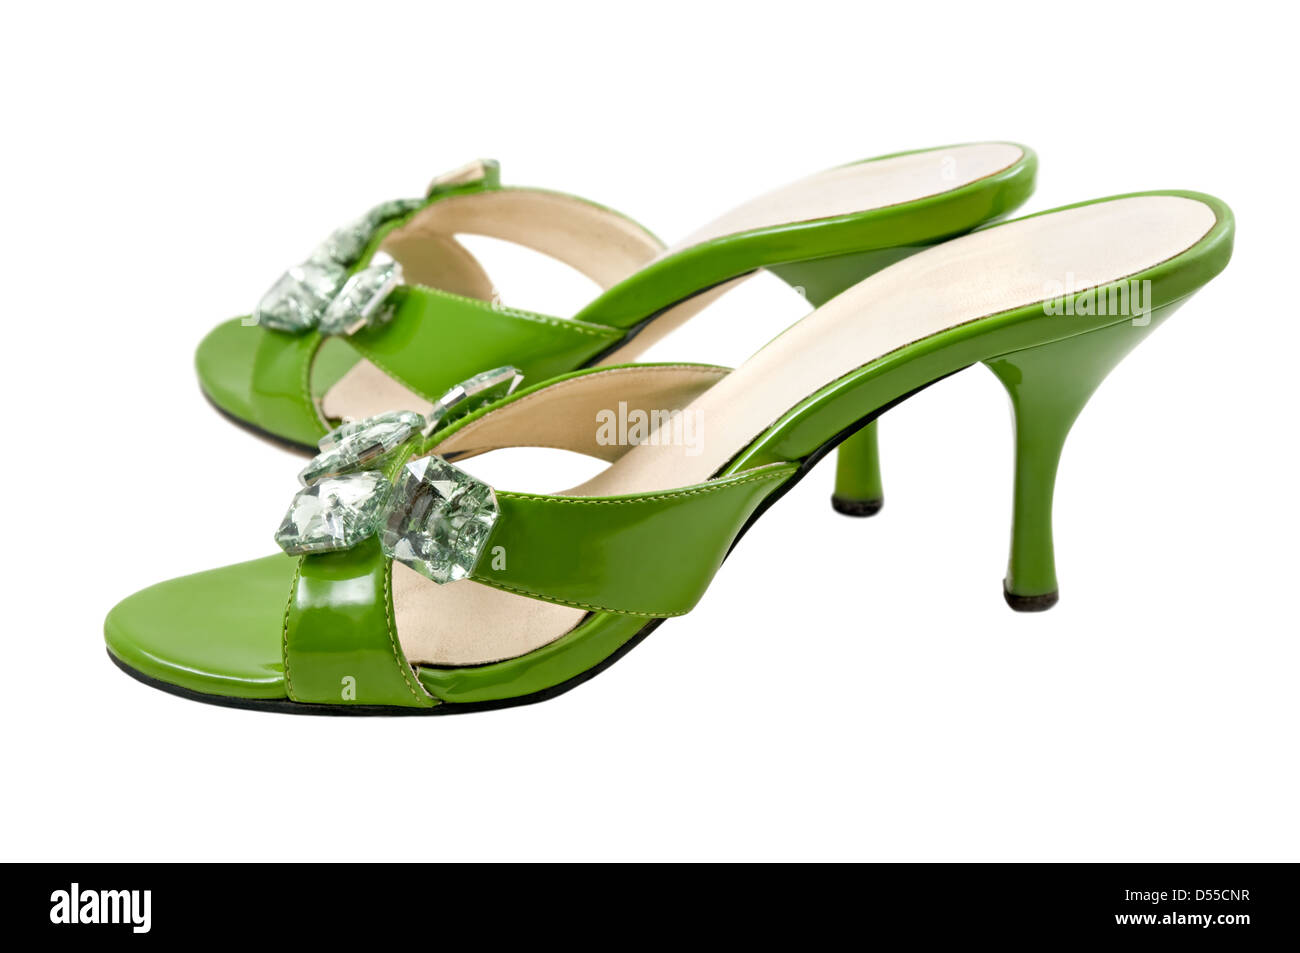 Die grünen Schuhe sind auf dem weißen Hintergrund fotografiert. Stockfoto